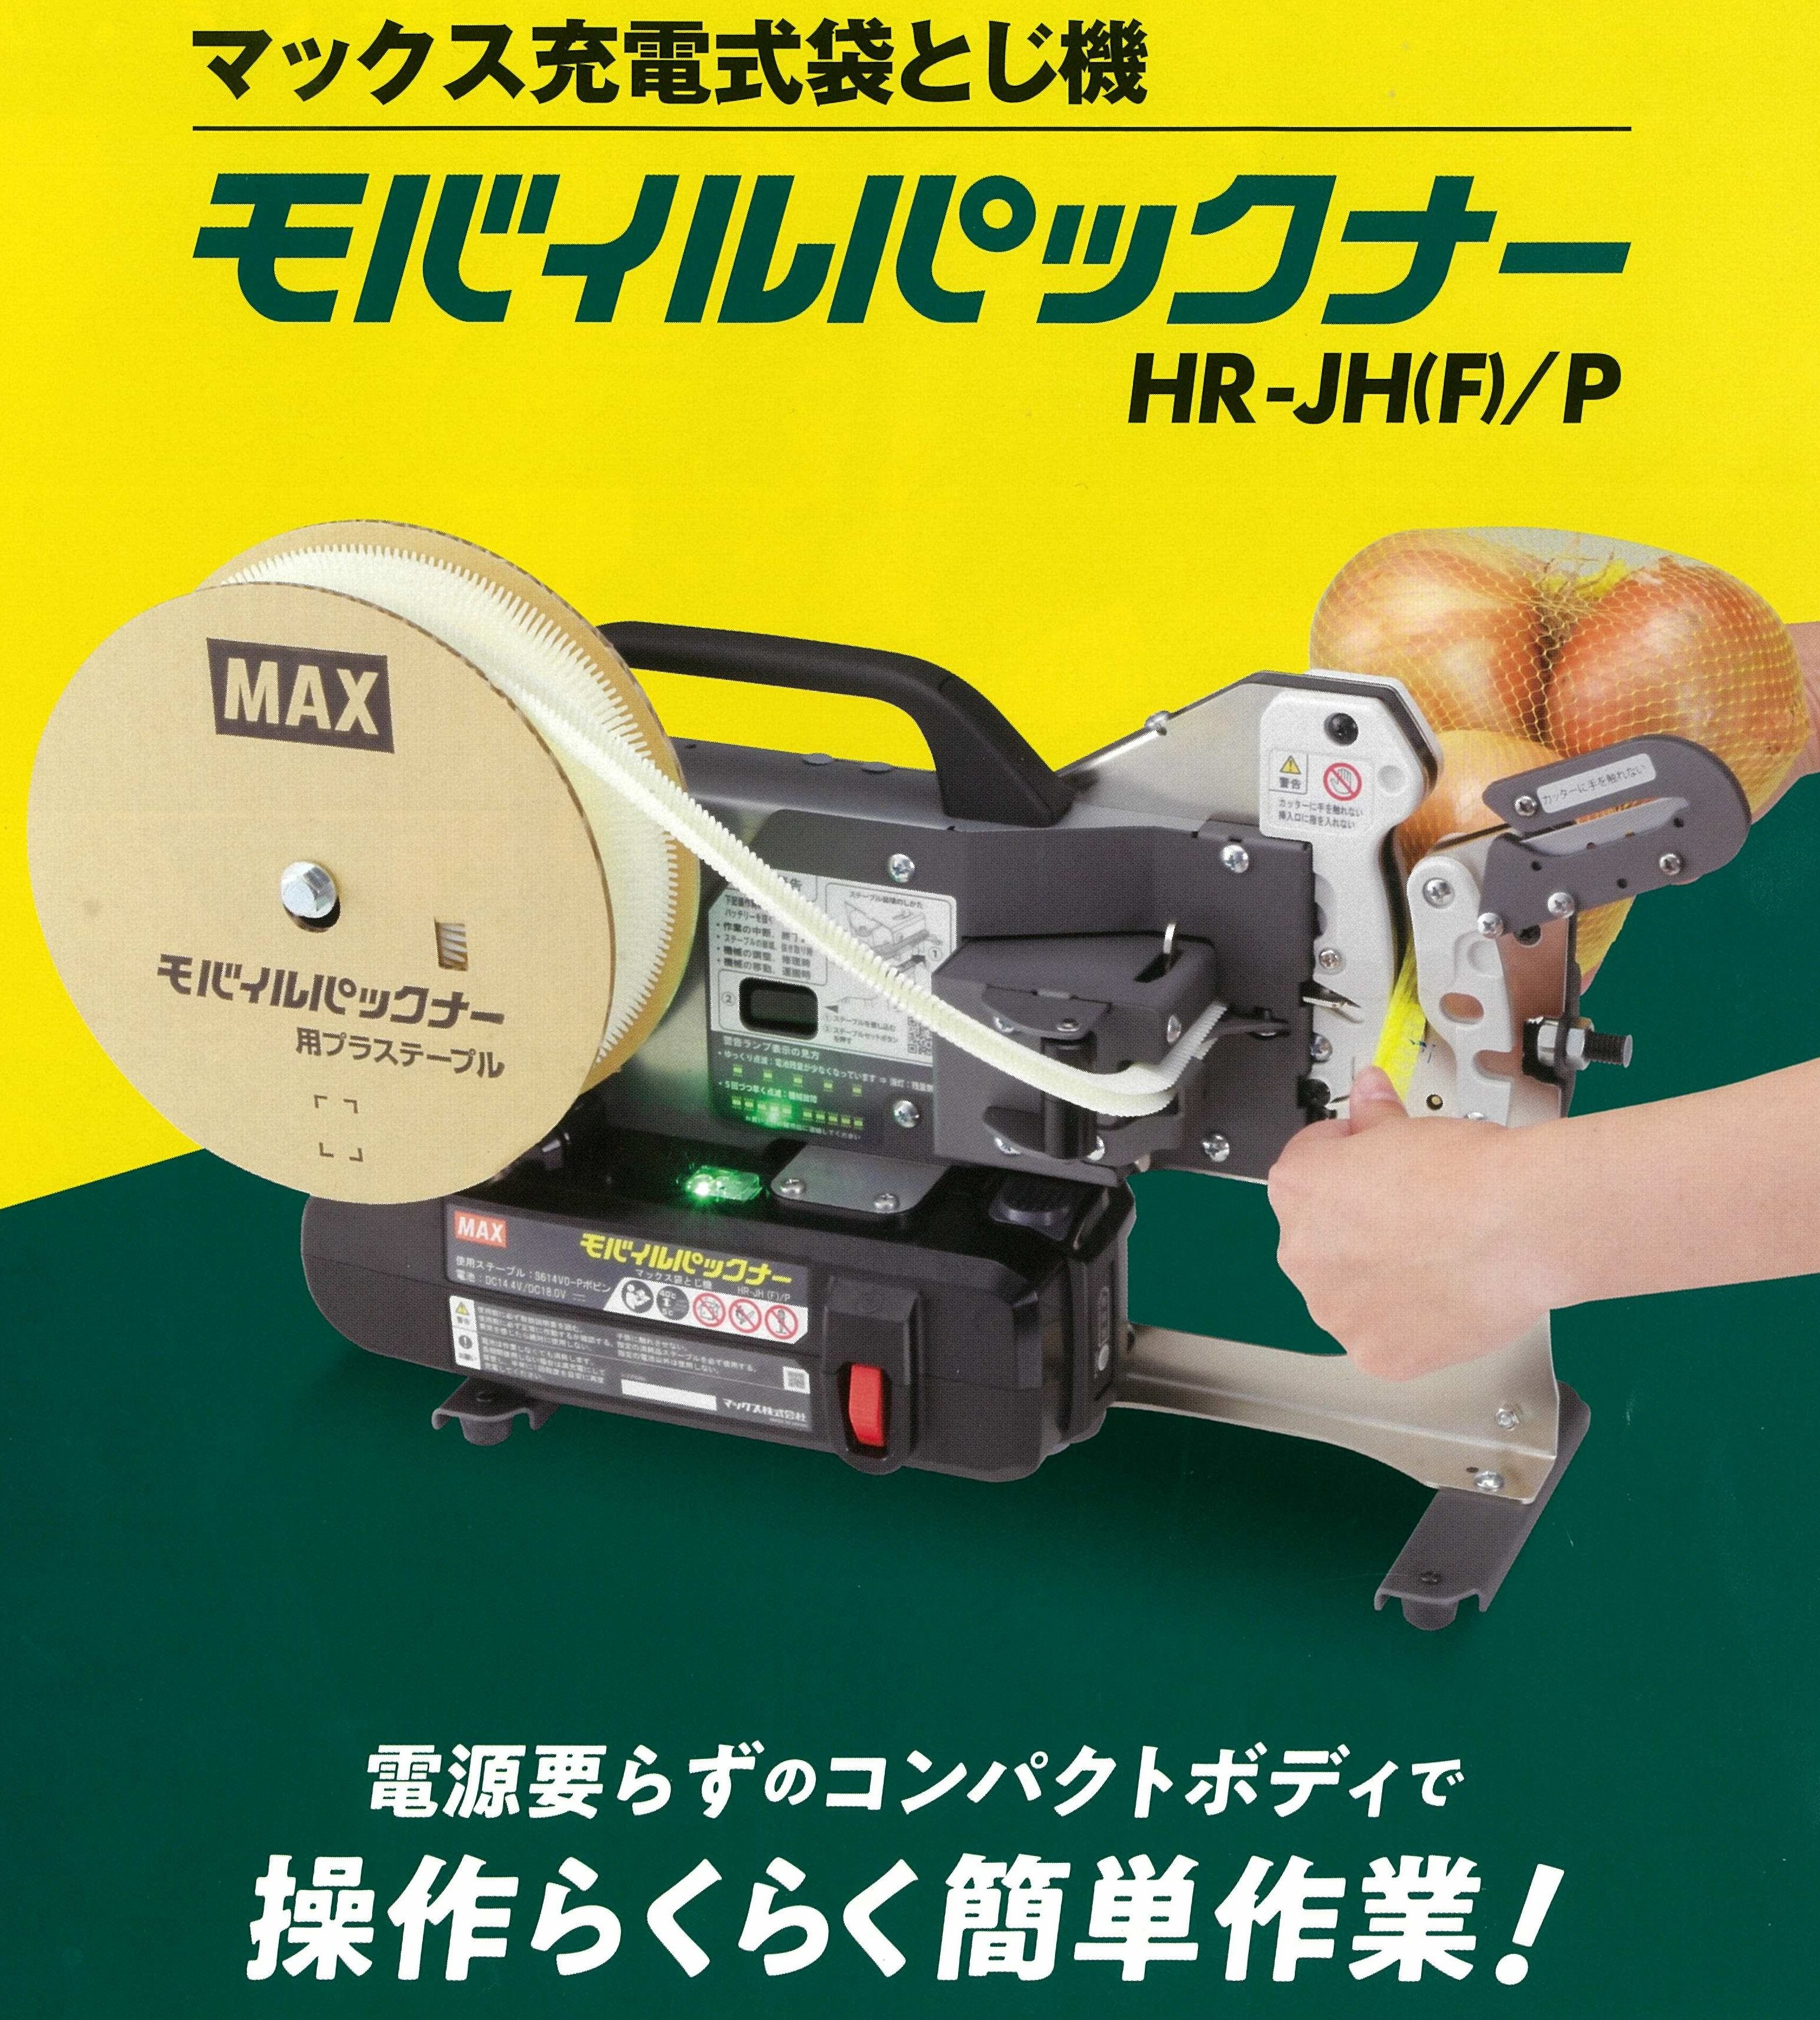 【本体のみ】モバイルパックナー HR-JH(F)/P 袋とじ機 袋とじ器具 